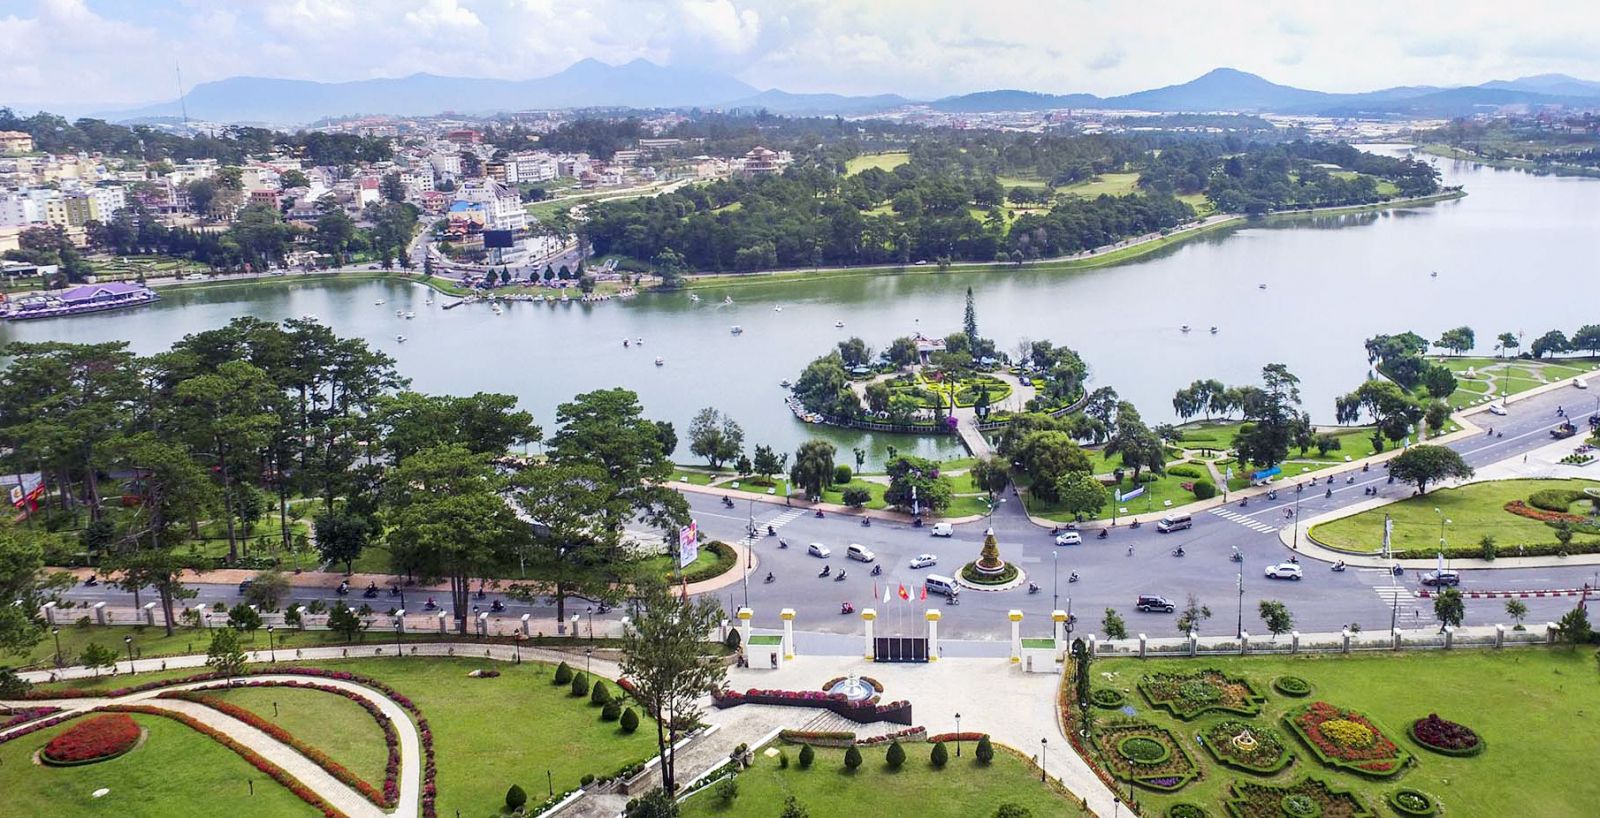 Cần bổ sung sản phẩm để tăng tính kết nối giữa hai khu vực hồ Prenn và hồ Tuyền Lâm